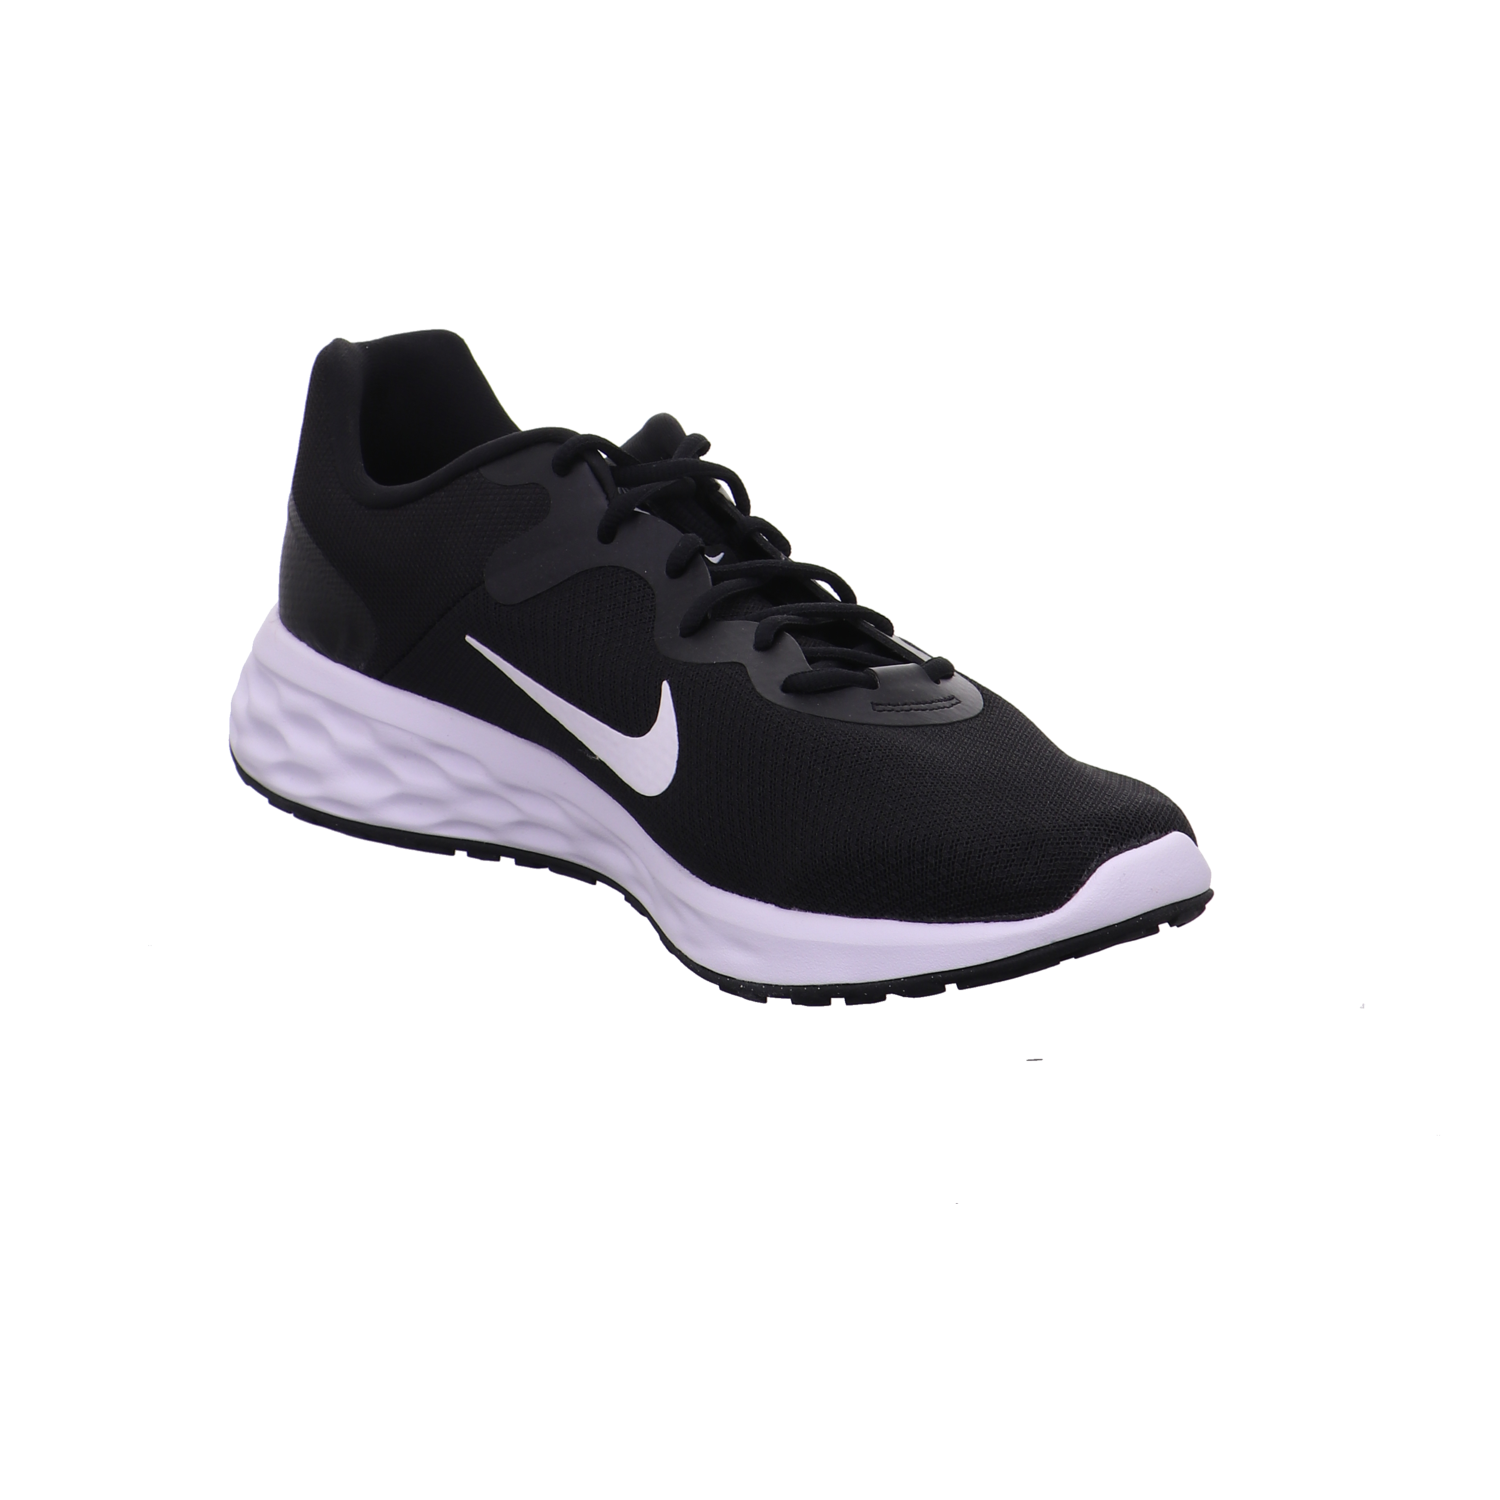 Nike Training und Hallenschuhe schwarz-weiß Bild7